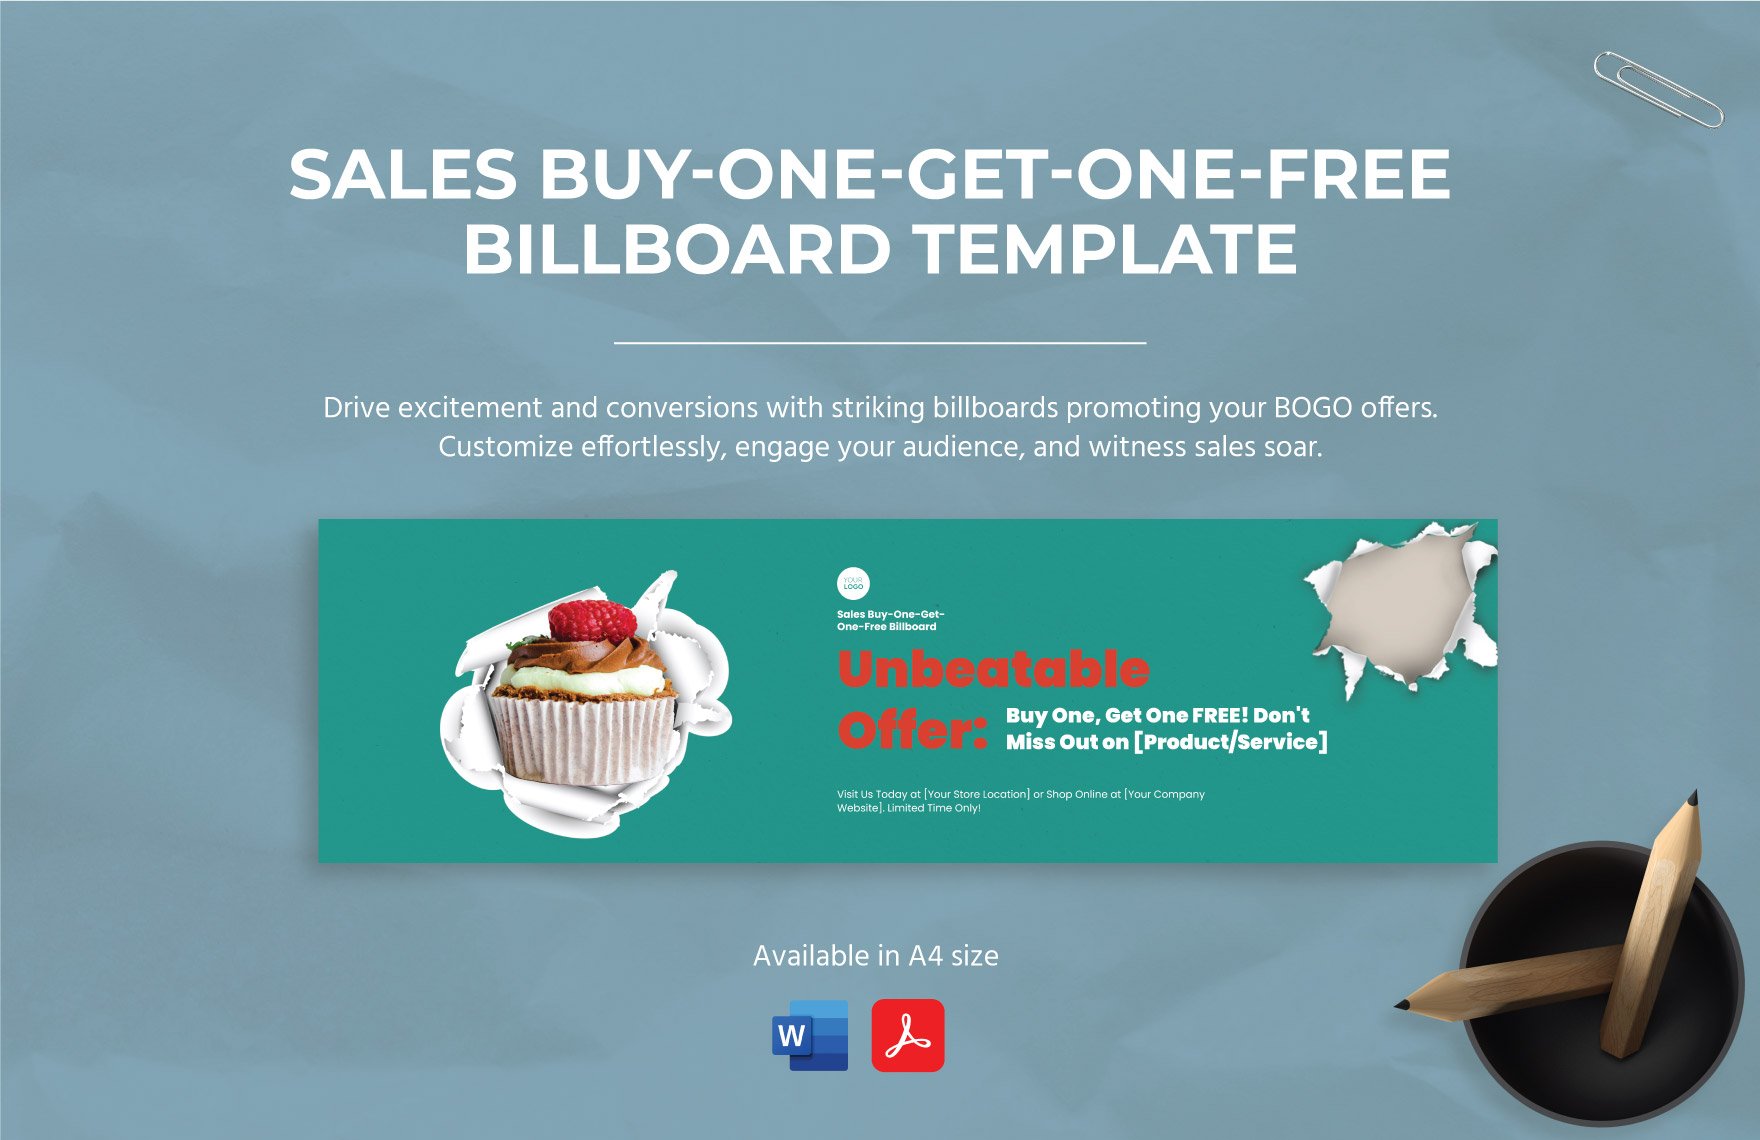 Sales Buy-One-Get-One-Free Billboard Template in Word, PDF